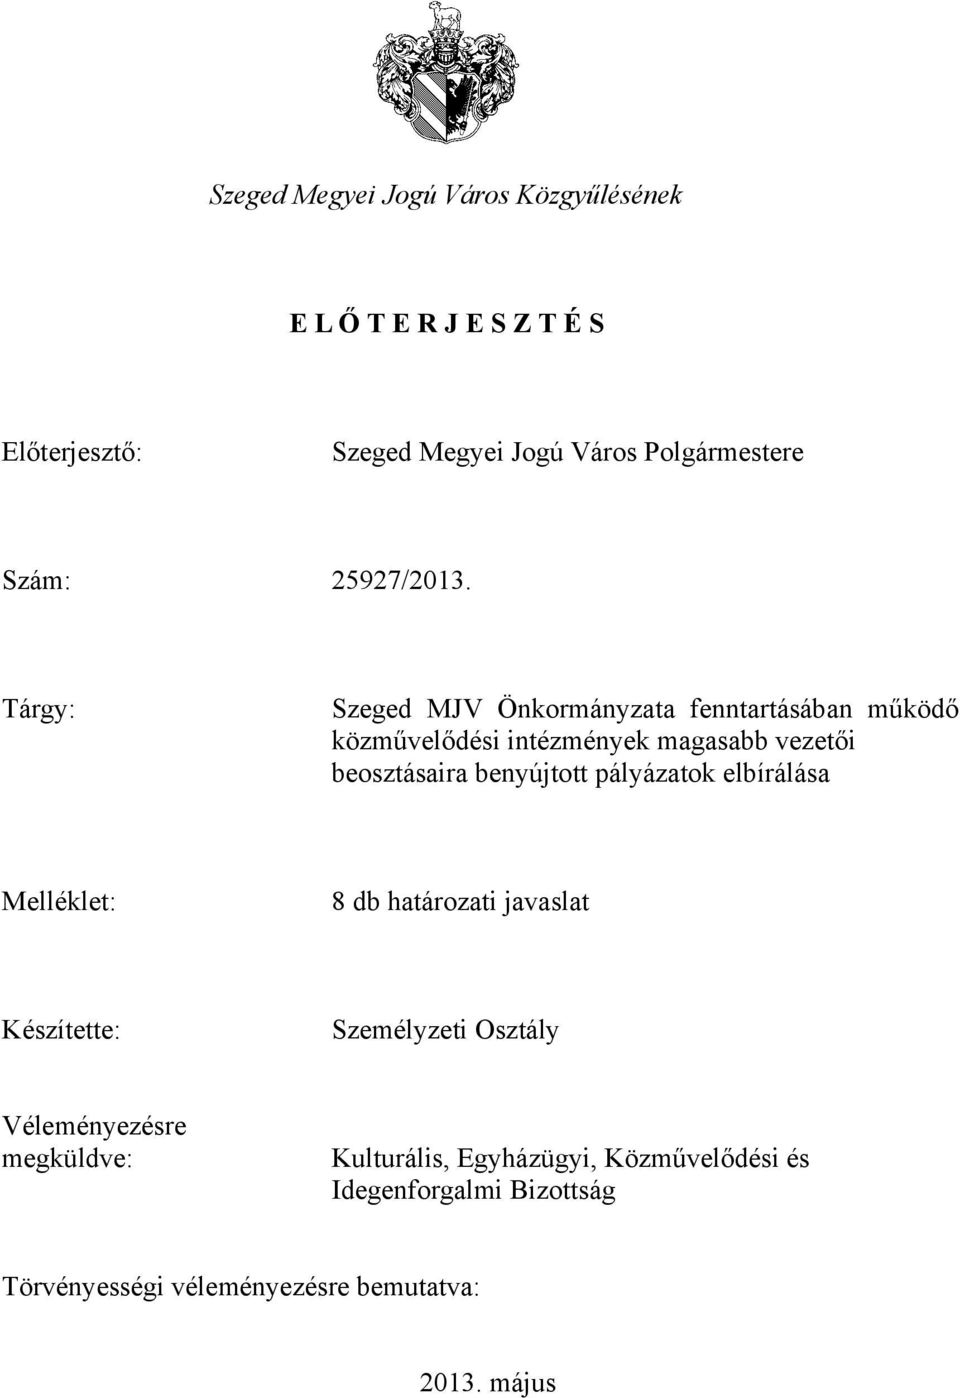 Tárgy: Szeged MJV Önkormányzata fenntartásában működő közművelődési intézmények magasabb vezetői beosztásaira benyújtott